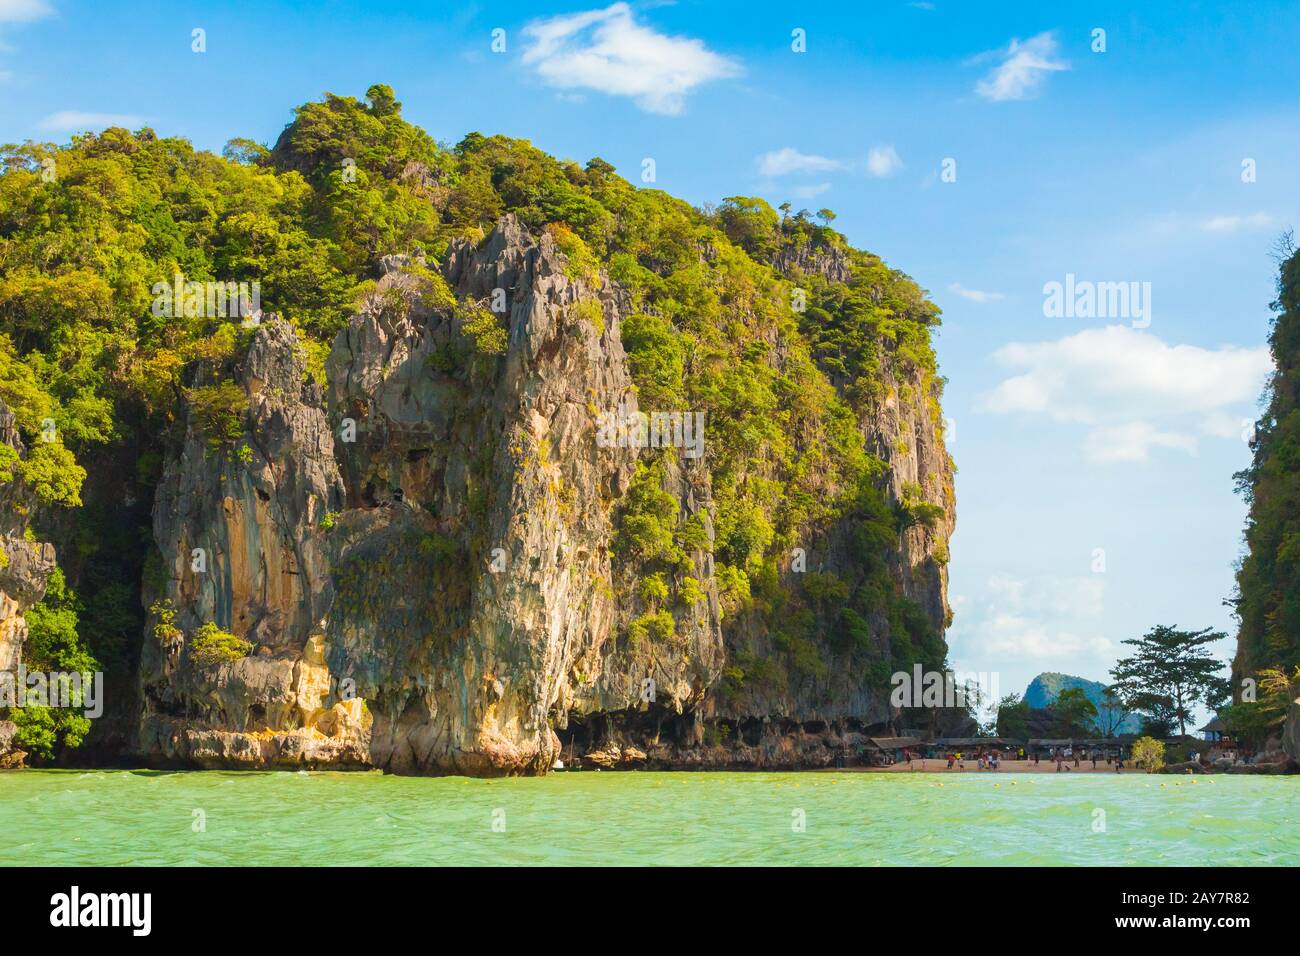 Ao Phang Nga National Park james bond island view from the sea Stock Photo